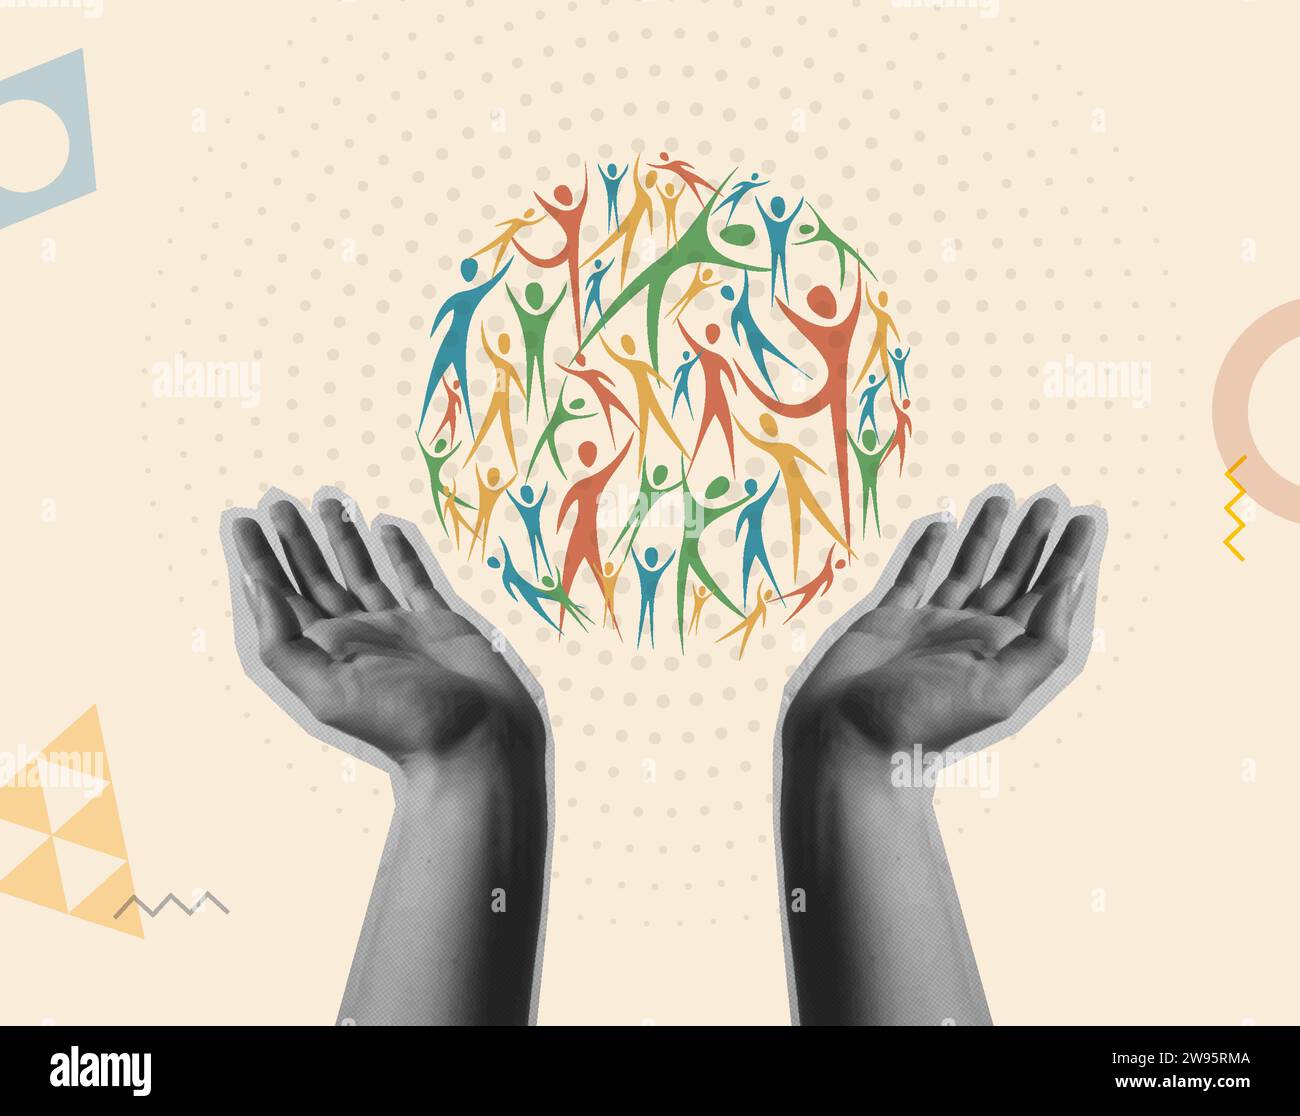 Illustrazione della scheda vettoriale Community e Diversity. Mani umane che tengono in mano un cerchio di persone diverse in un collage retrò di tendenza in stile anni '90 Illustrazione Vettoriale